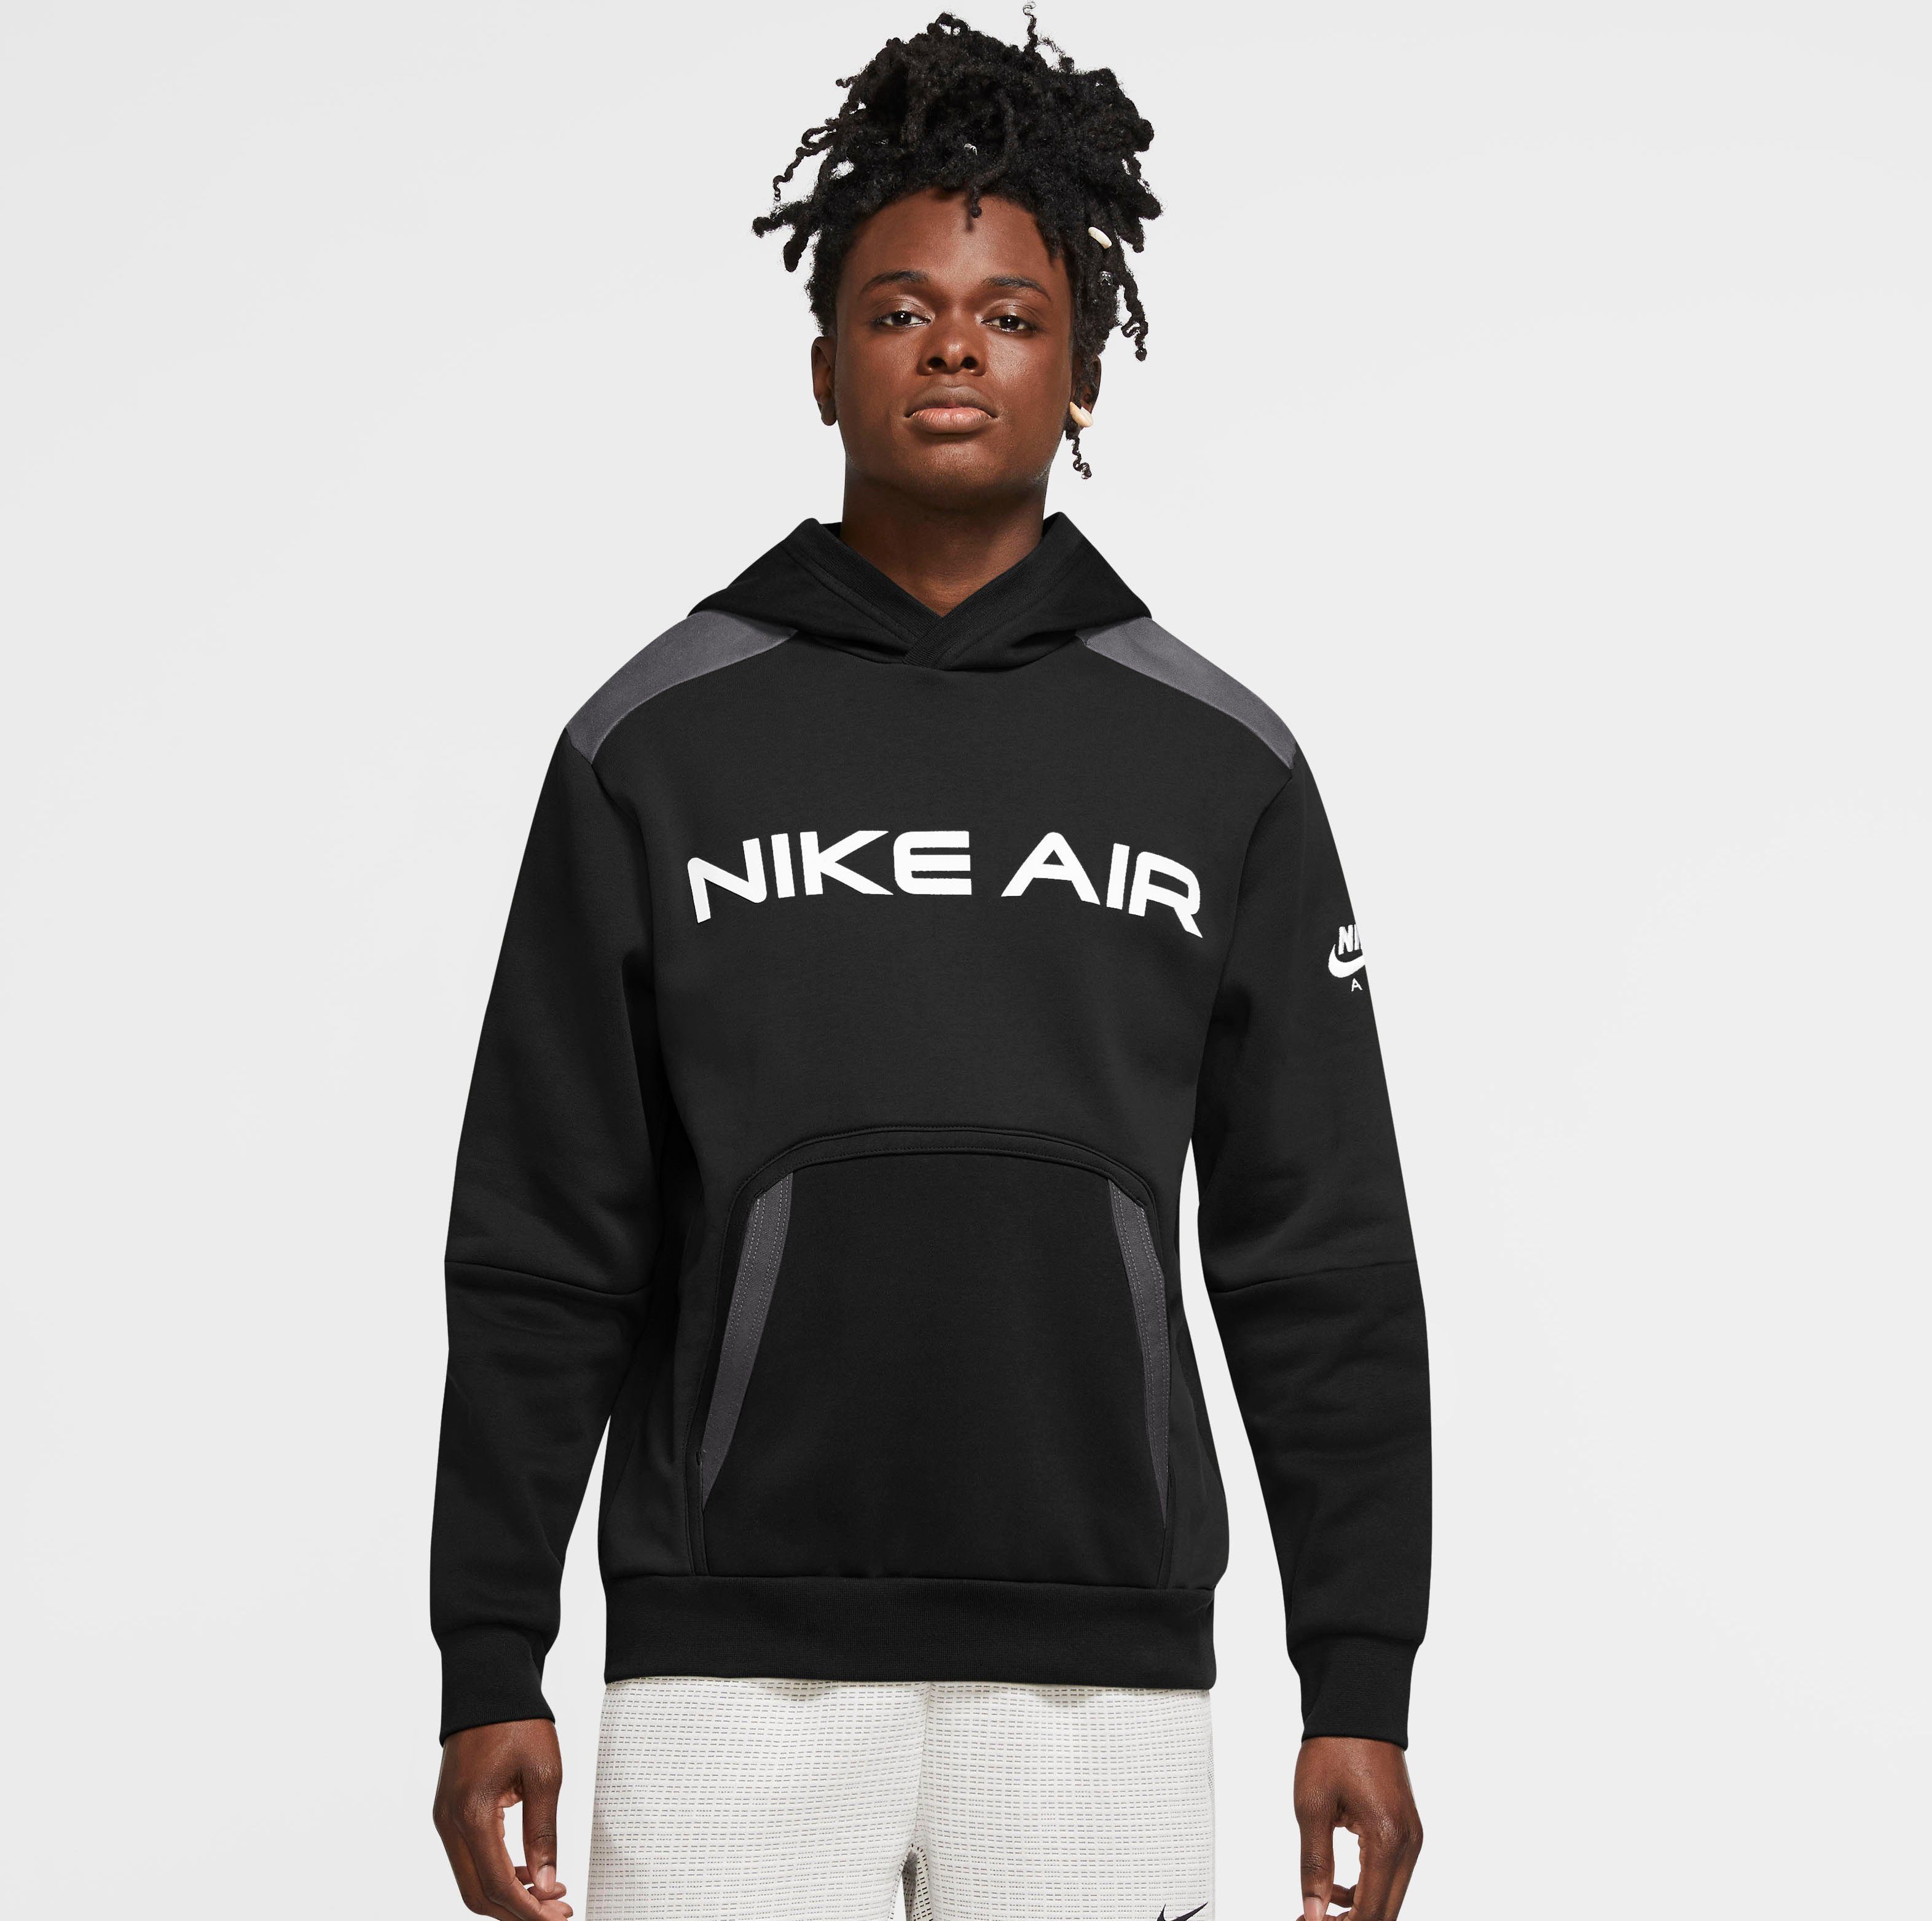 Nike Pullover Herren online kaufen | OTTO